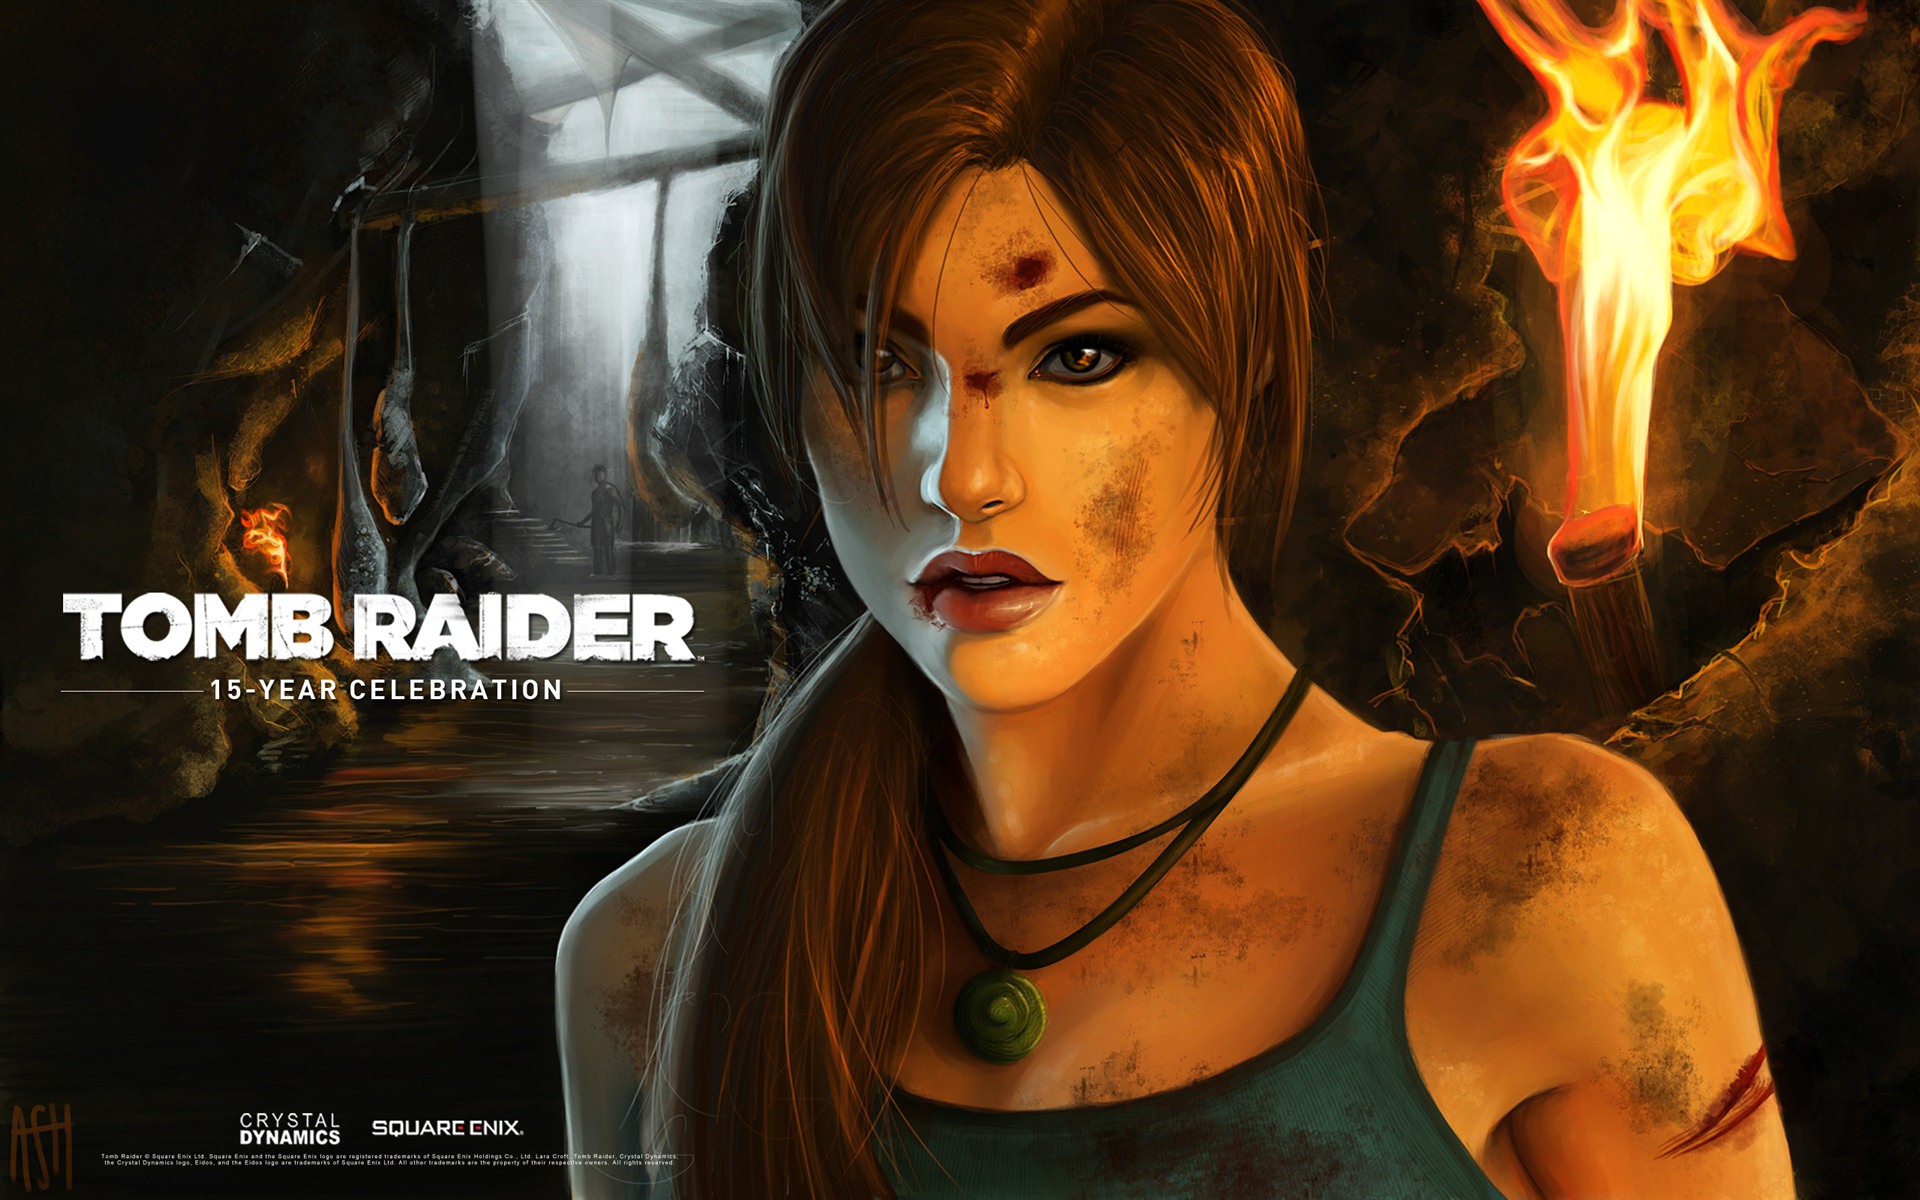 Tomb Raider 15-Year Celebration 古墓丽影15周年纪念版 高清壁纸7 - 1920x1200